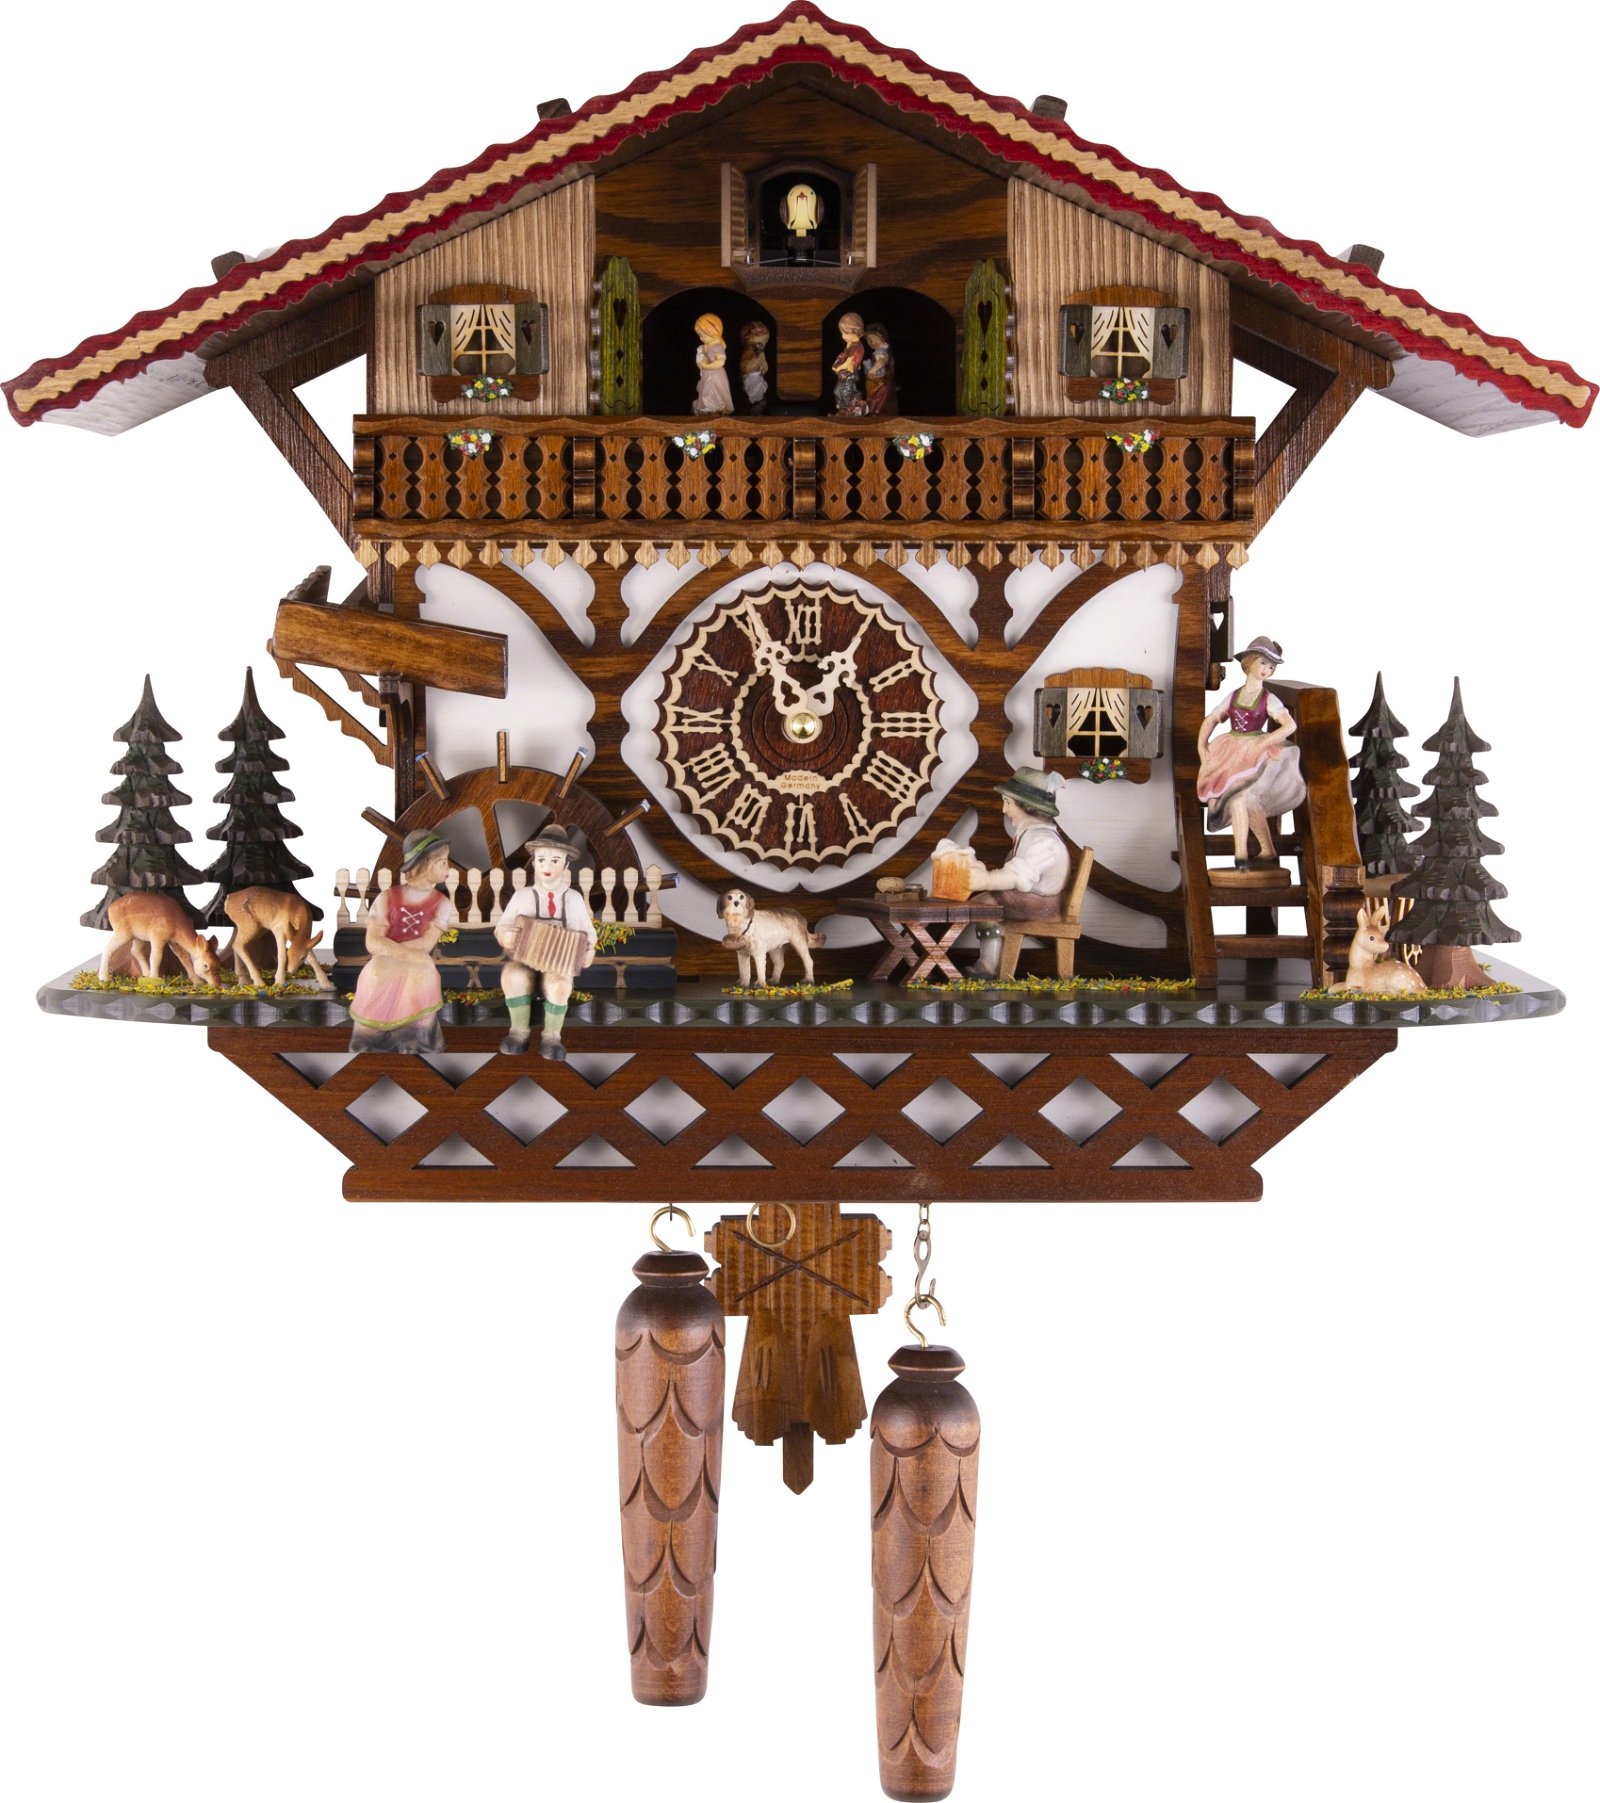 Kuckucksuhr Chalet-Stil Quarz-Uhrwerk 34cm von Trenkle Uhren